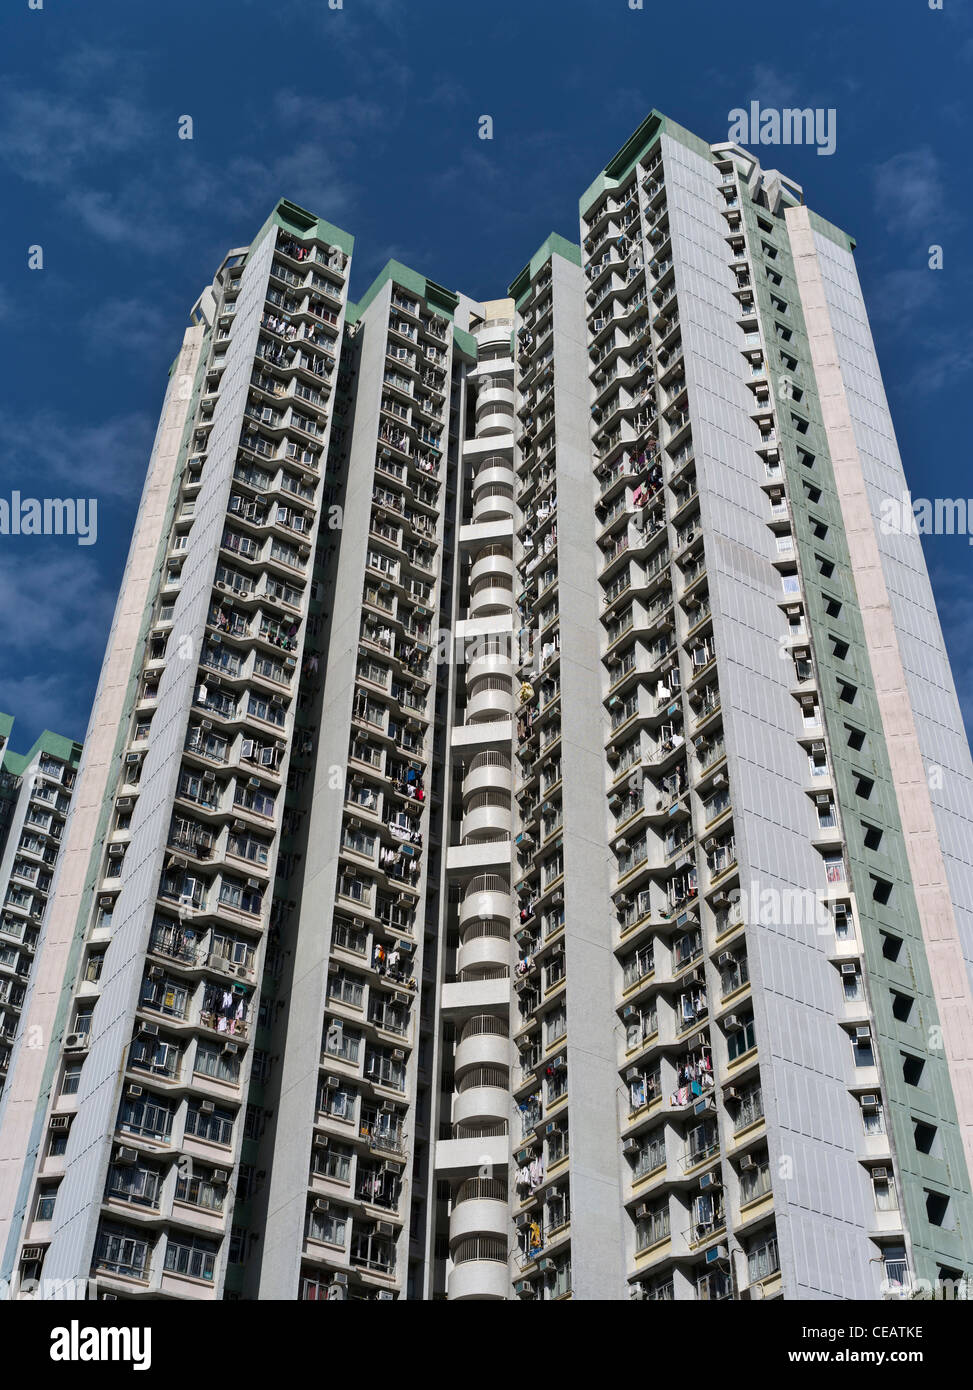 dh Highrise Flats QUARRY BAY HONG KONG logement social à Shau Kei WAN gratte-ciel bâtiment bloc gratte-ciel hk regardant de grands bâtiments Banque D'Images